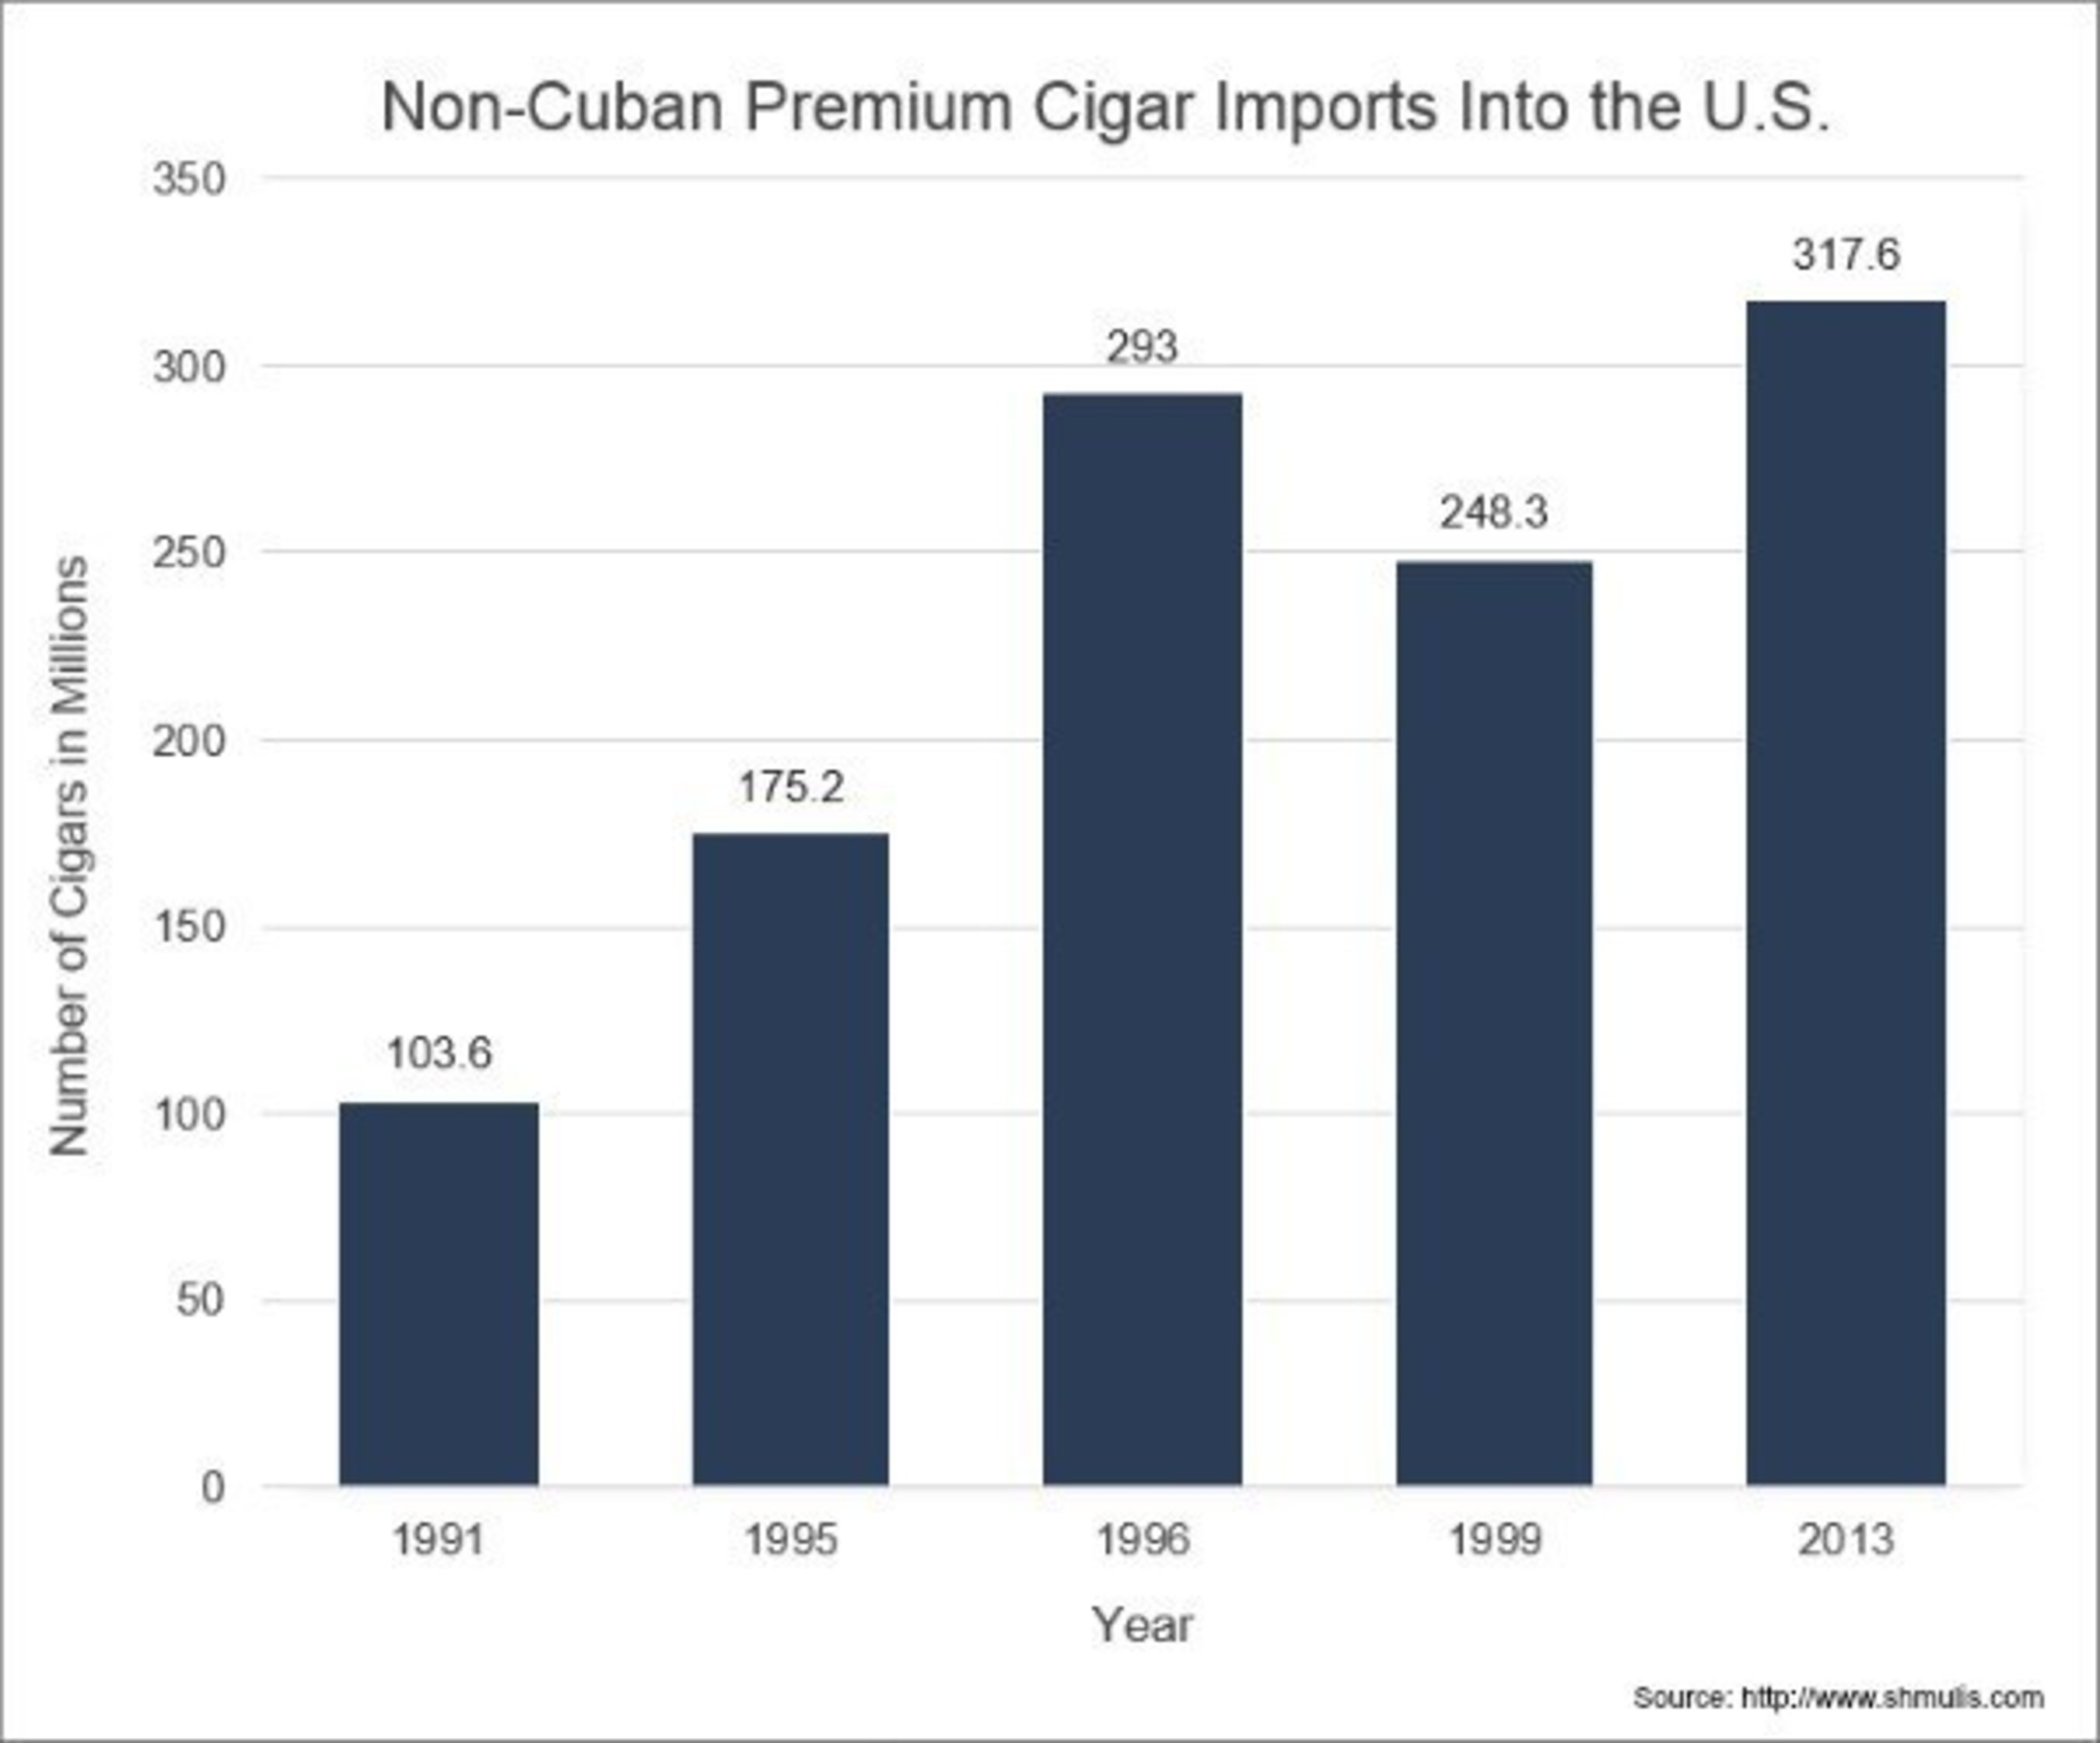 Non-Cuban Premium Cigar Imports into the U.S.